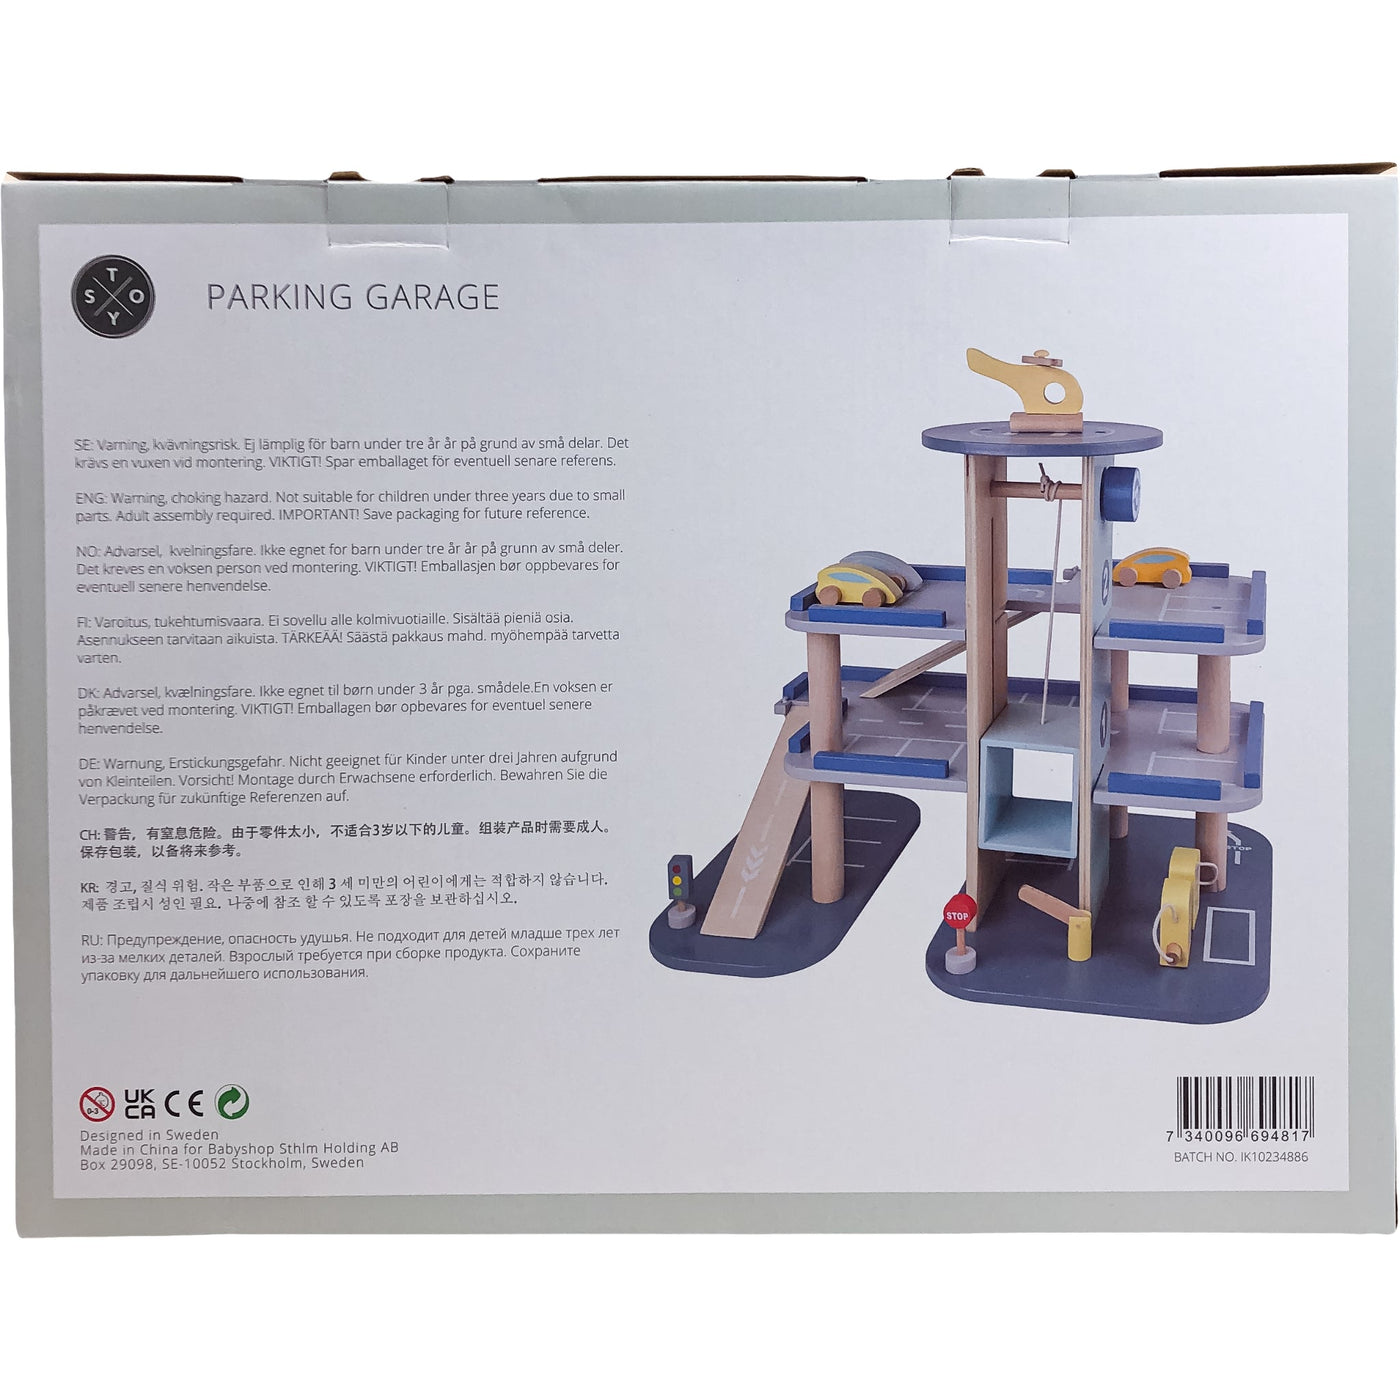 Garage "Garage avec accessoires" de seconde main en bois pour enfant à partir de 3 ans - photo secondaire